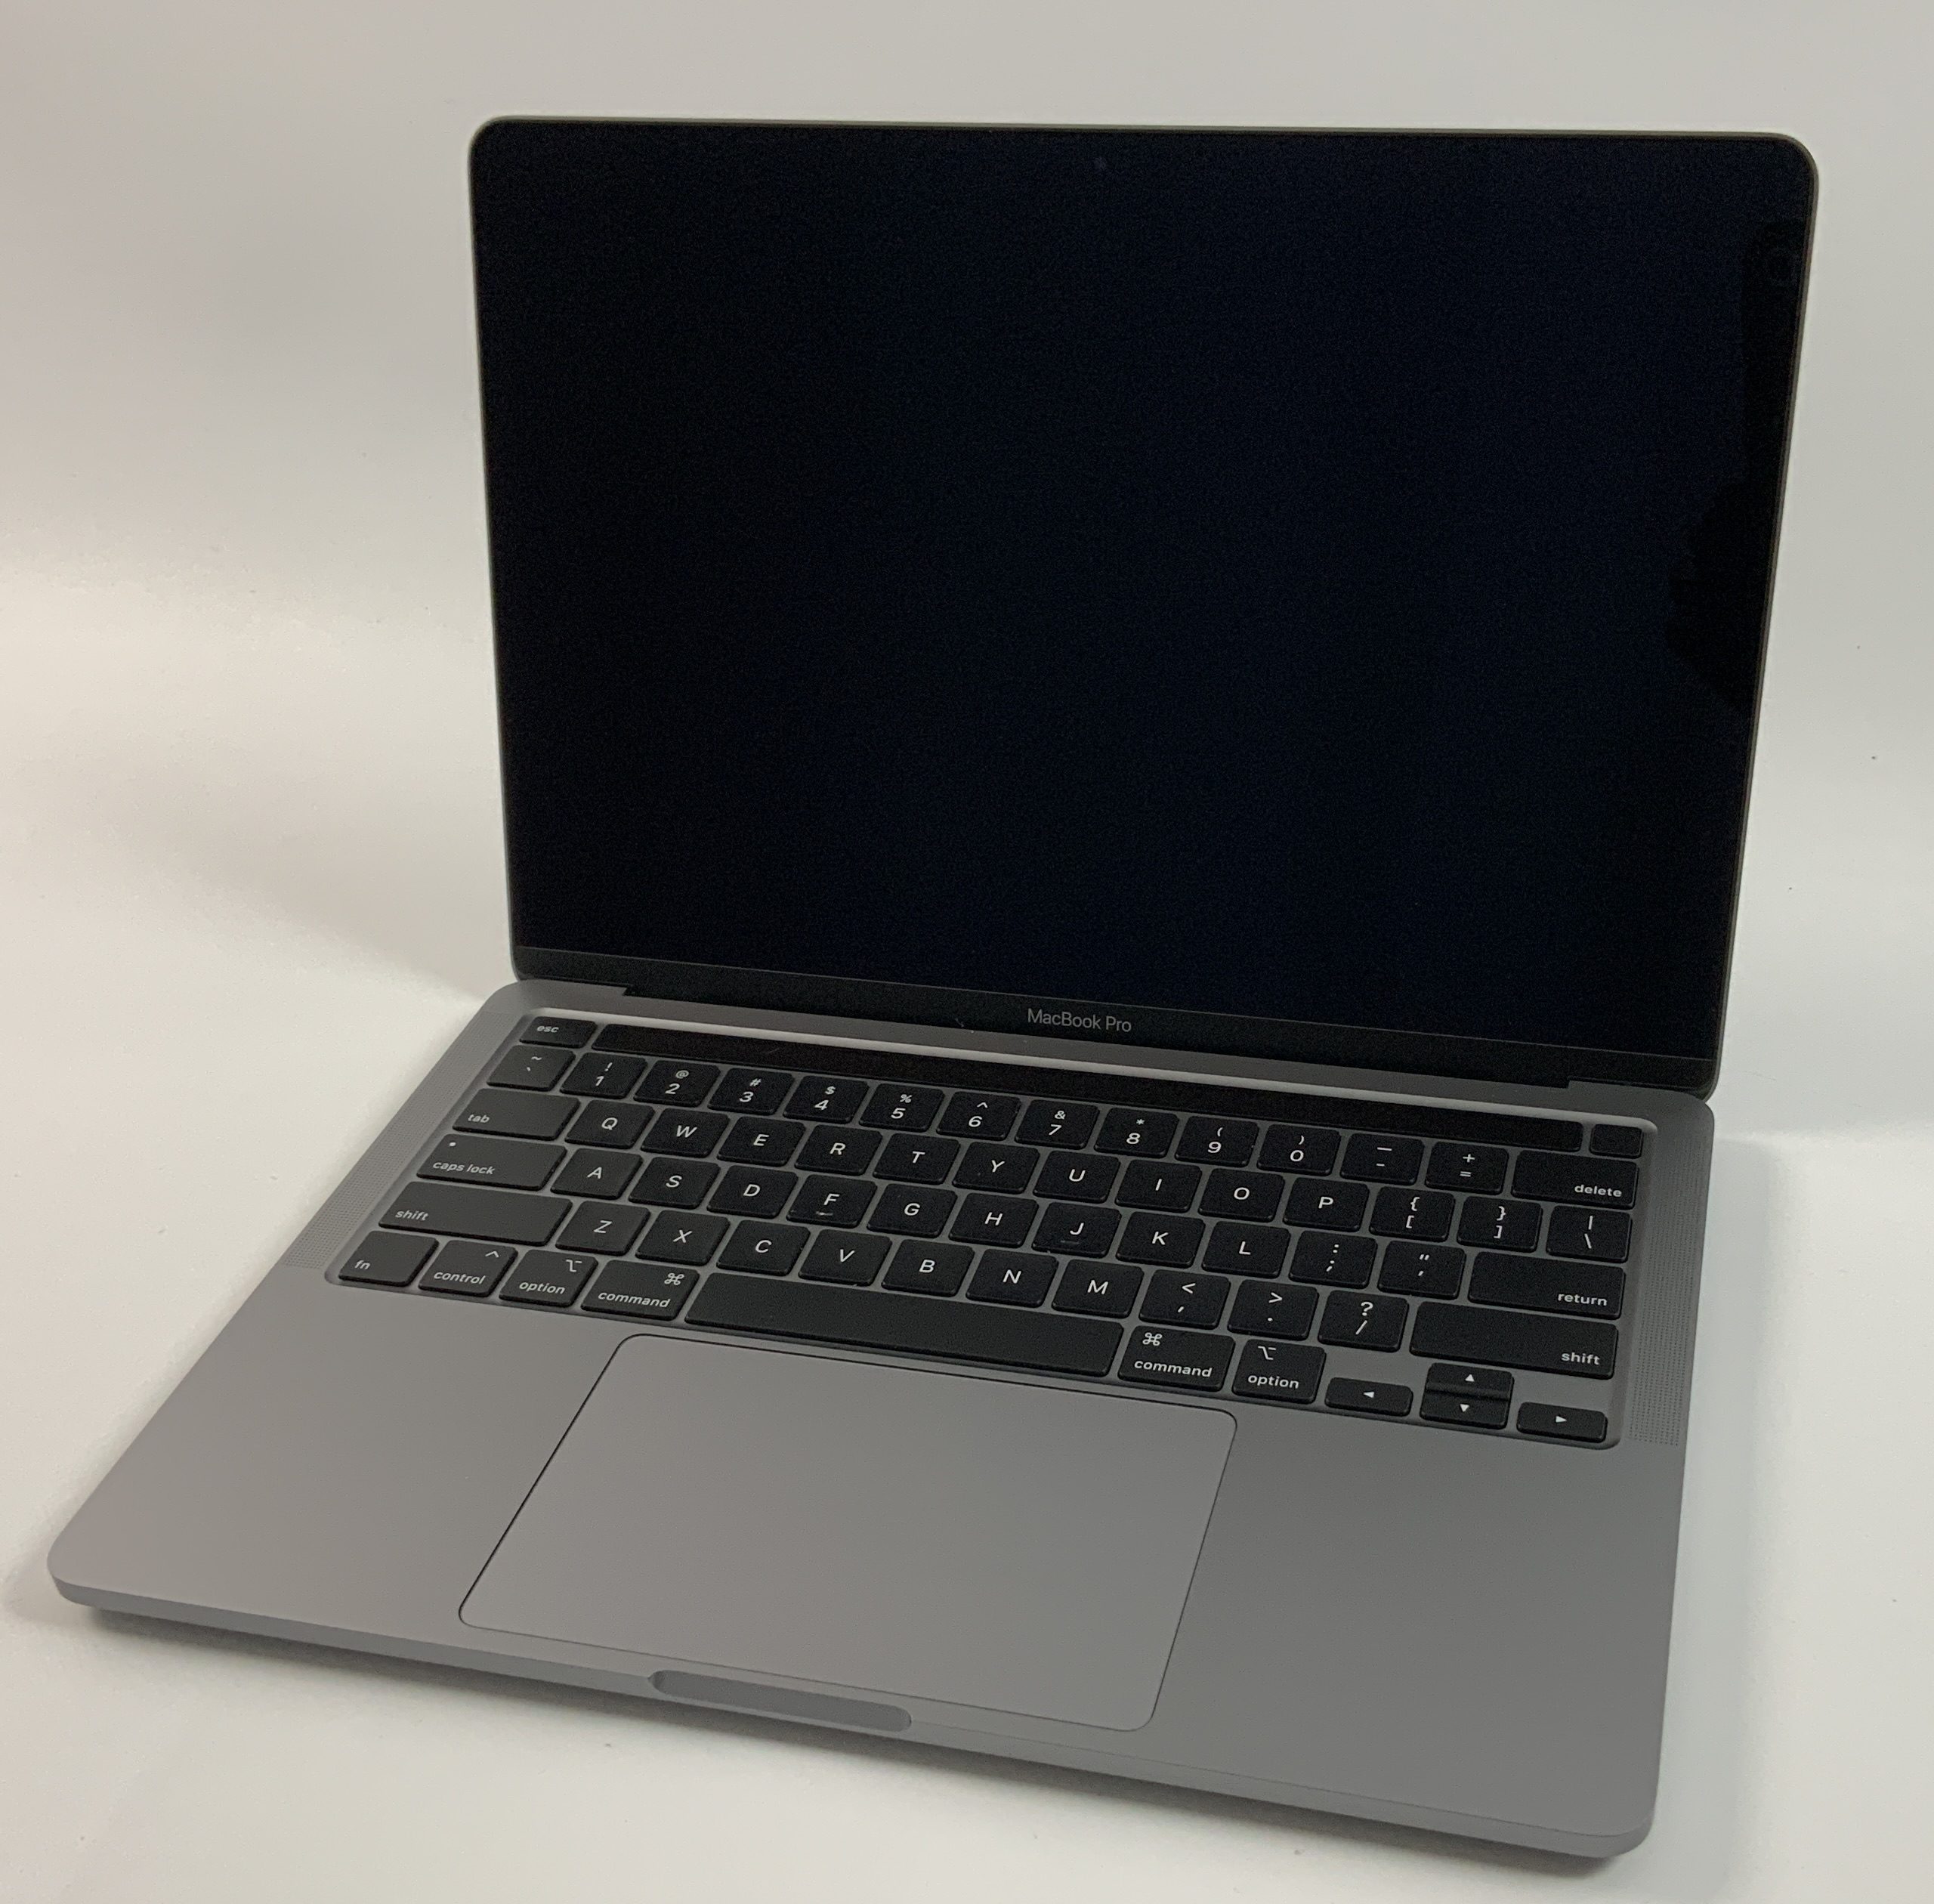 MacBook Pro 13" 4TBT Mid 2020 (Intel Quad-Core i5 2.0 GHz 16 GB RAM 512 GB SSD), Space Gray, Intel Quad-Core i5 2.0 GHz, 16 GB RAM, 512 GB SSD, Bild 1